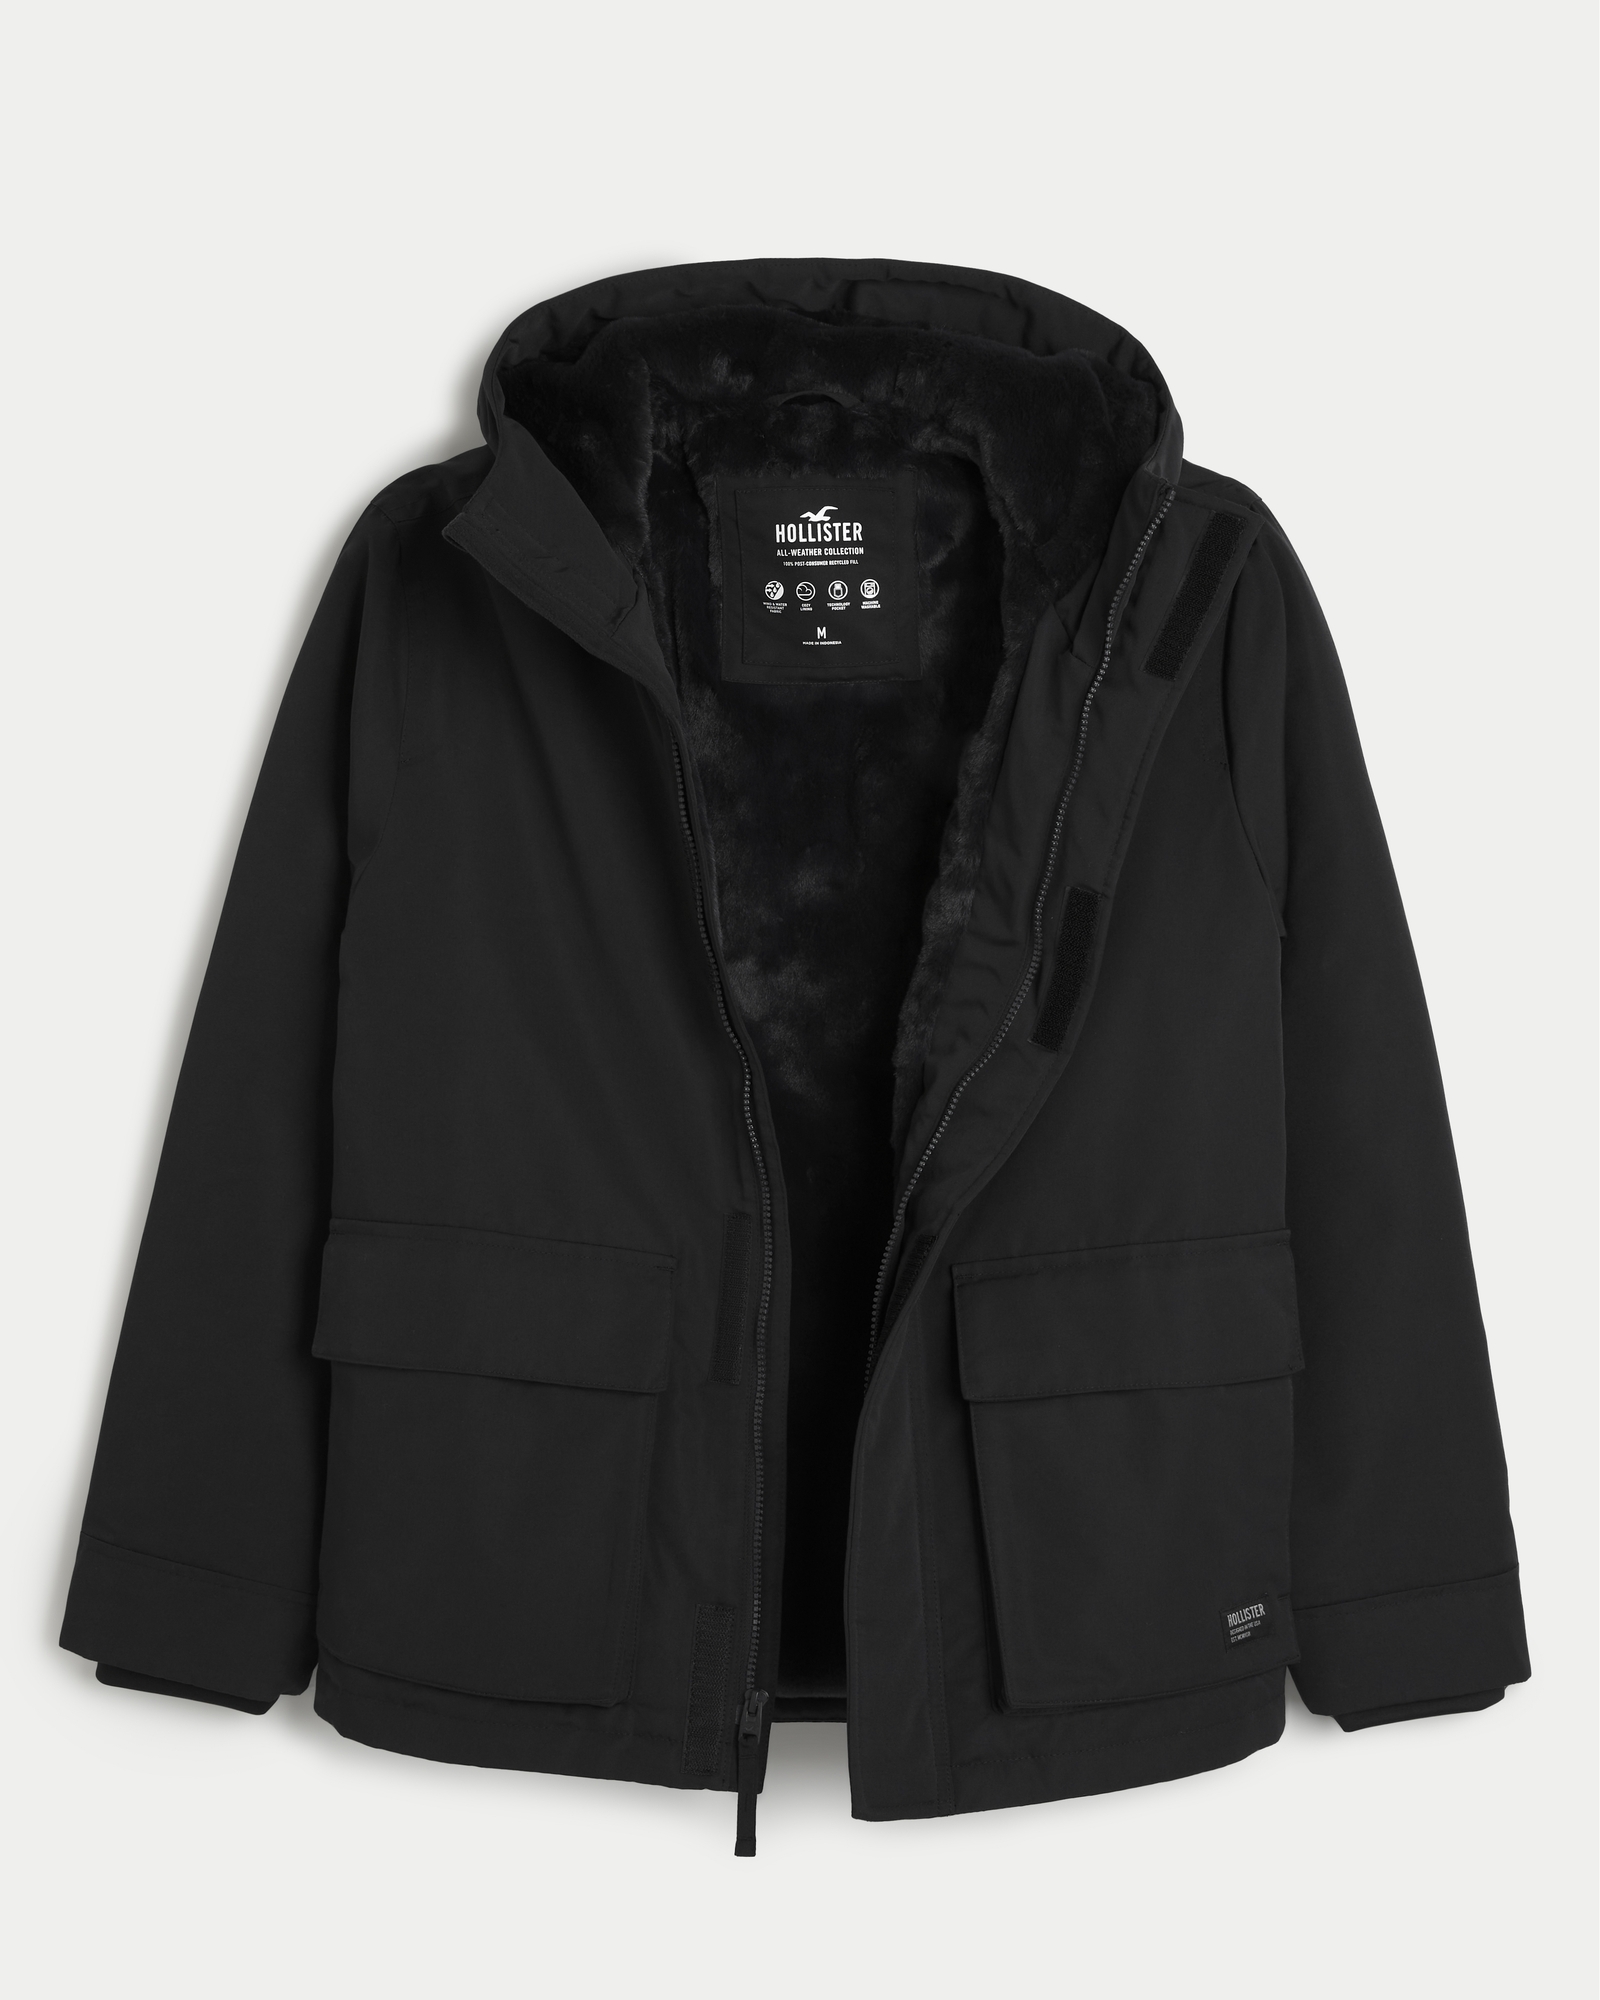 Hollister, Jackets & Coats, Hollister Winter Jacket